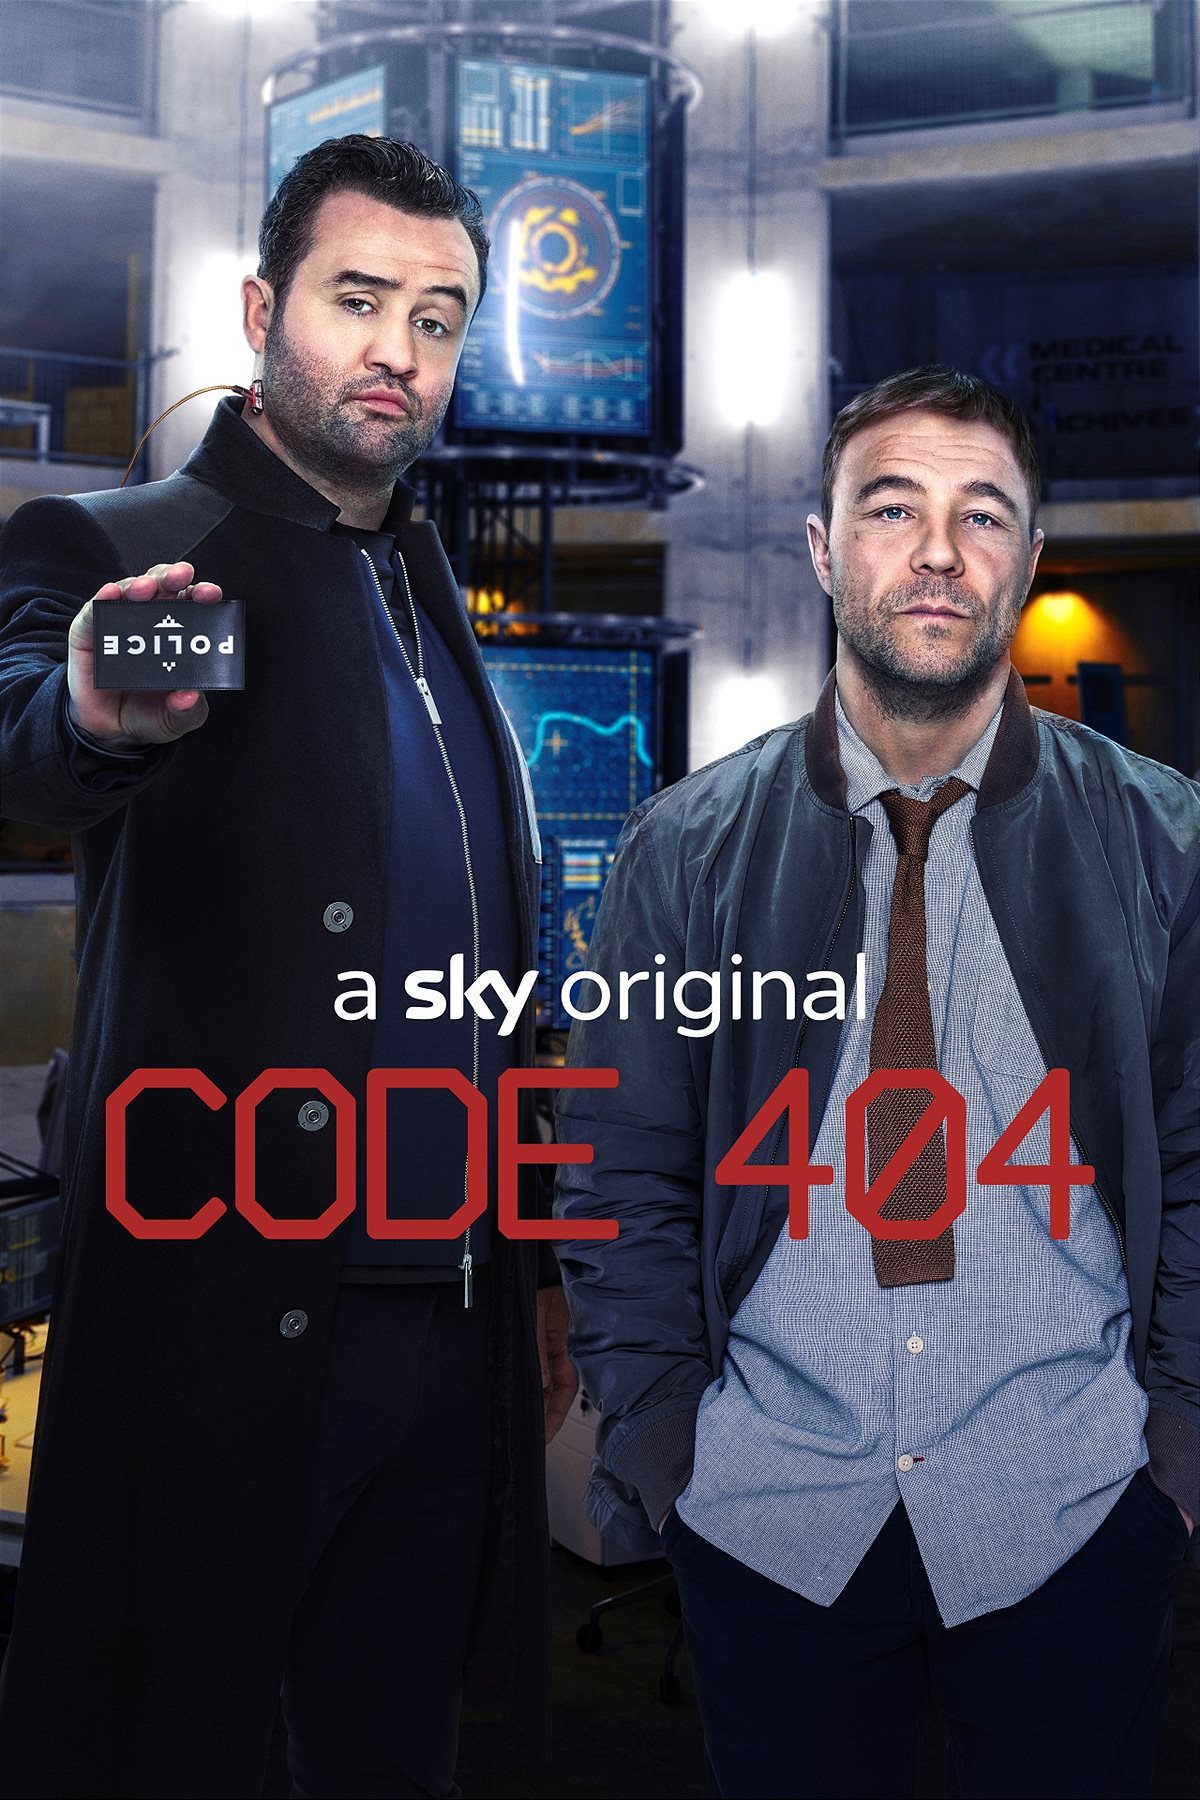 Sky_Code404